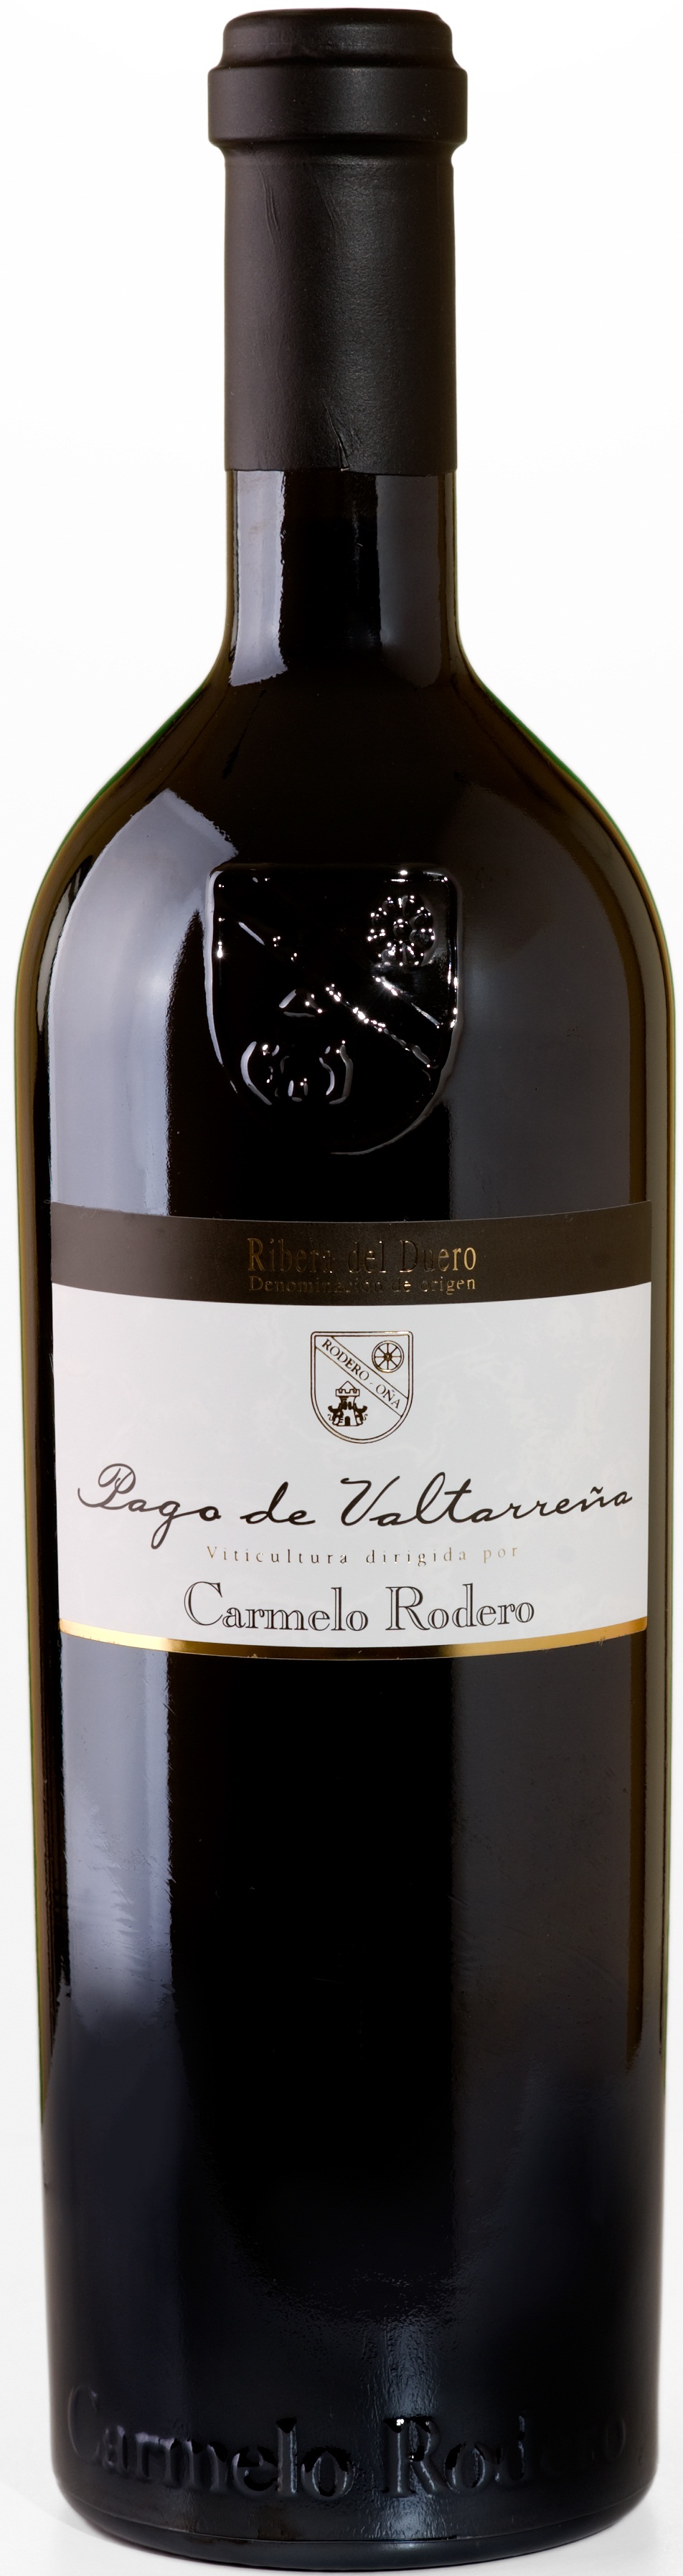 Image of Wine bottle Carmelo Rodero Pago de Valtarreña